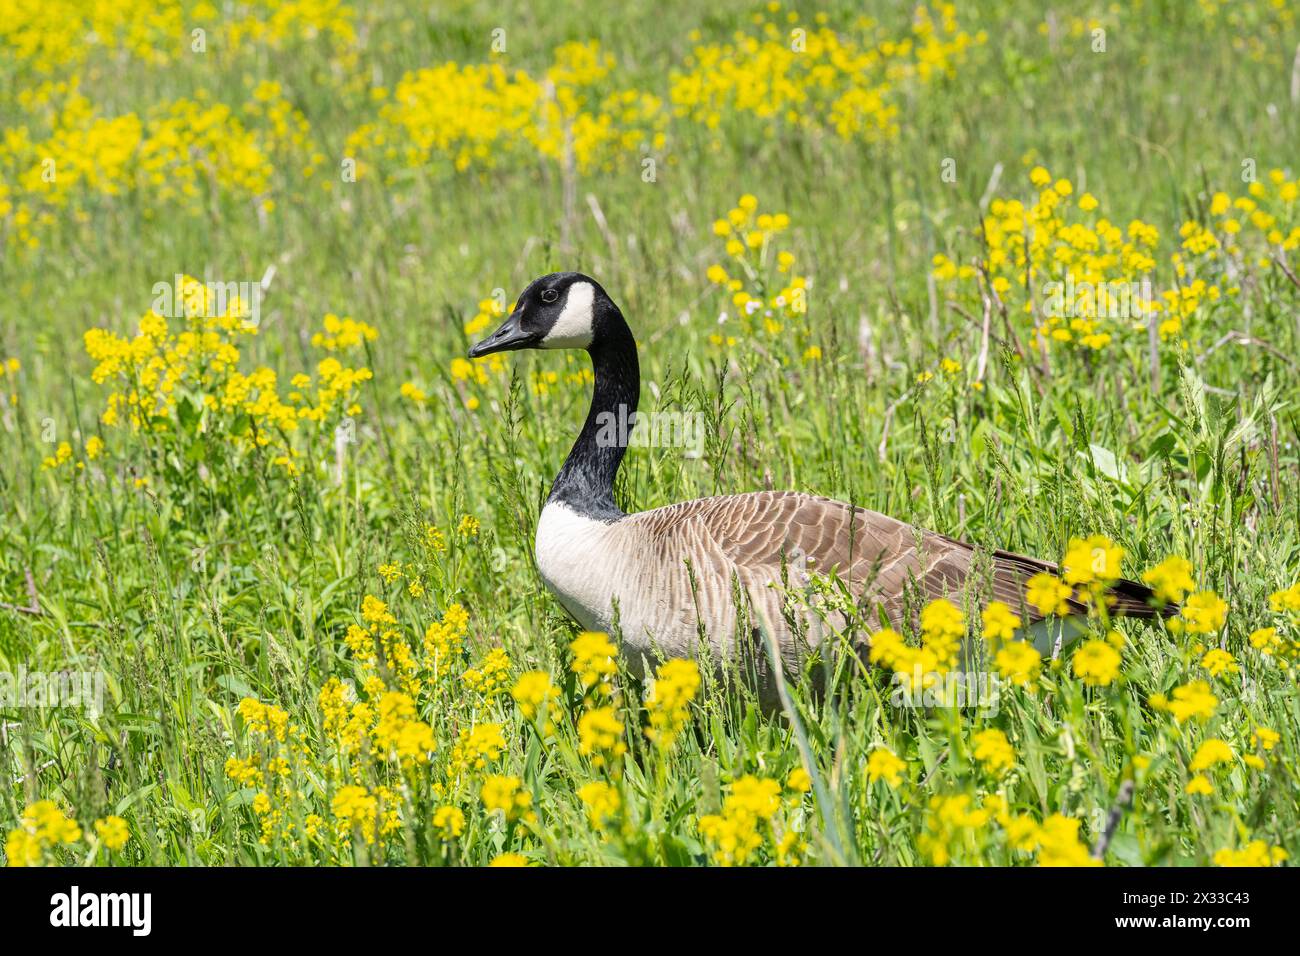 Portrait en gros plan d'une oie du Canada marchant dans un champ de fleurs sauvages jaunes au printemps. Banque D'Images